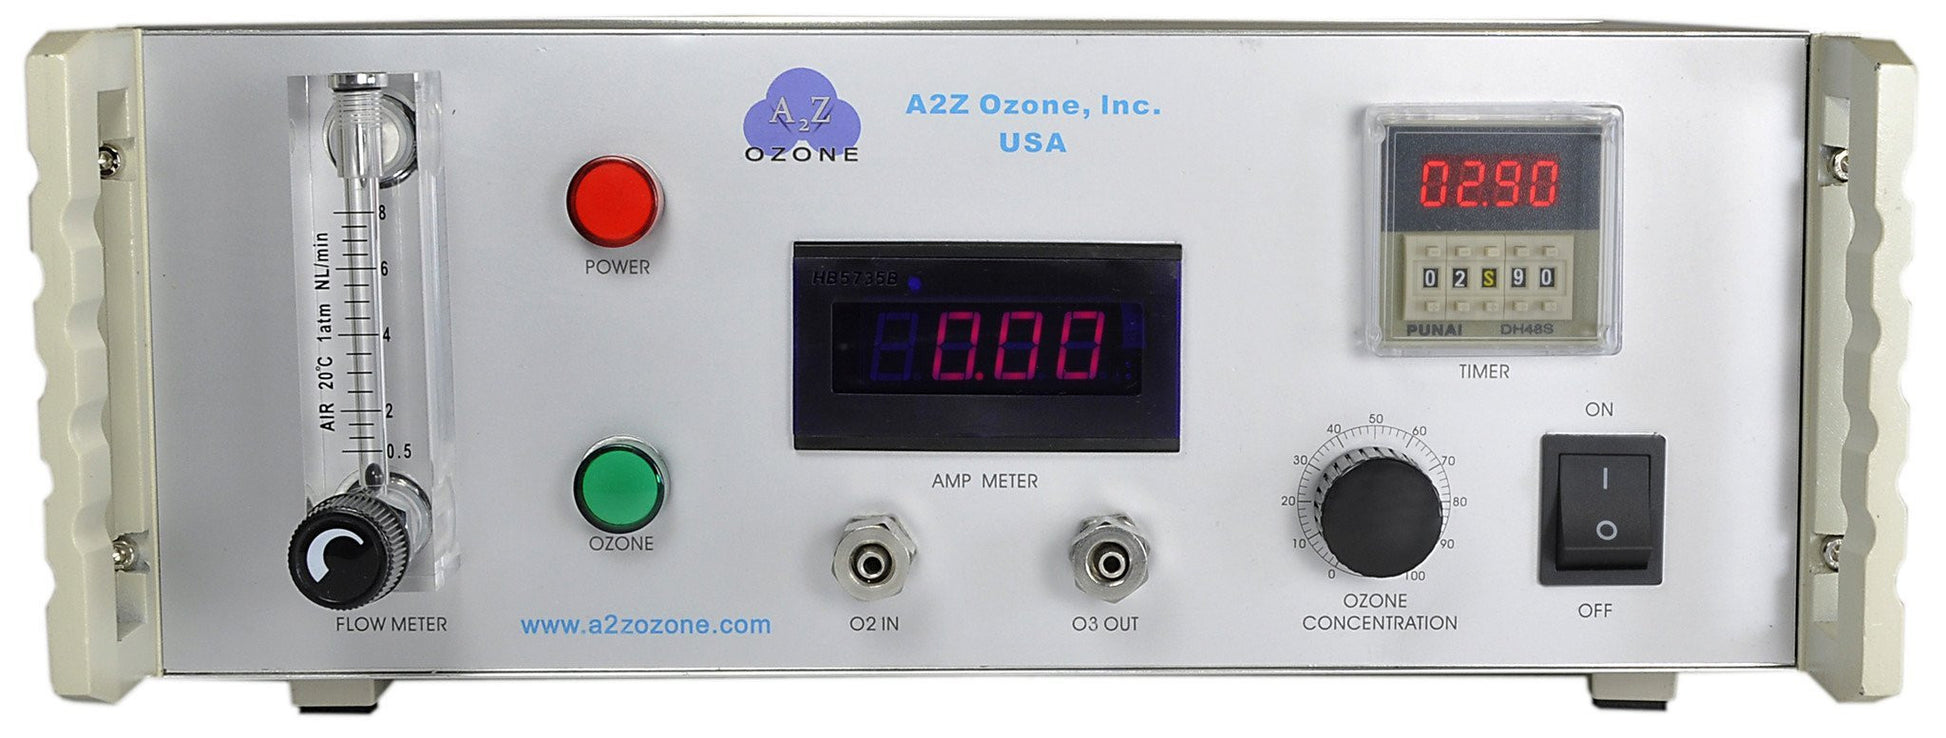 4G Lab Benchtop Ozone Generator | A2Z Ozone